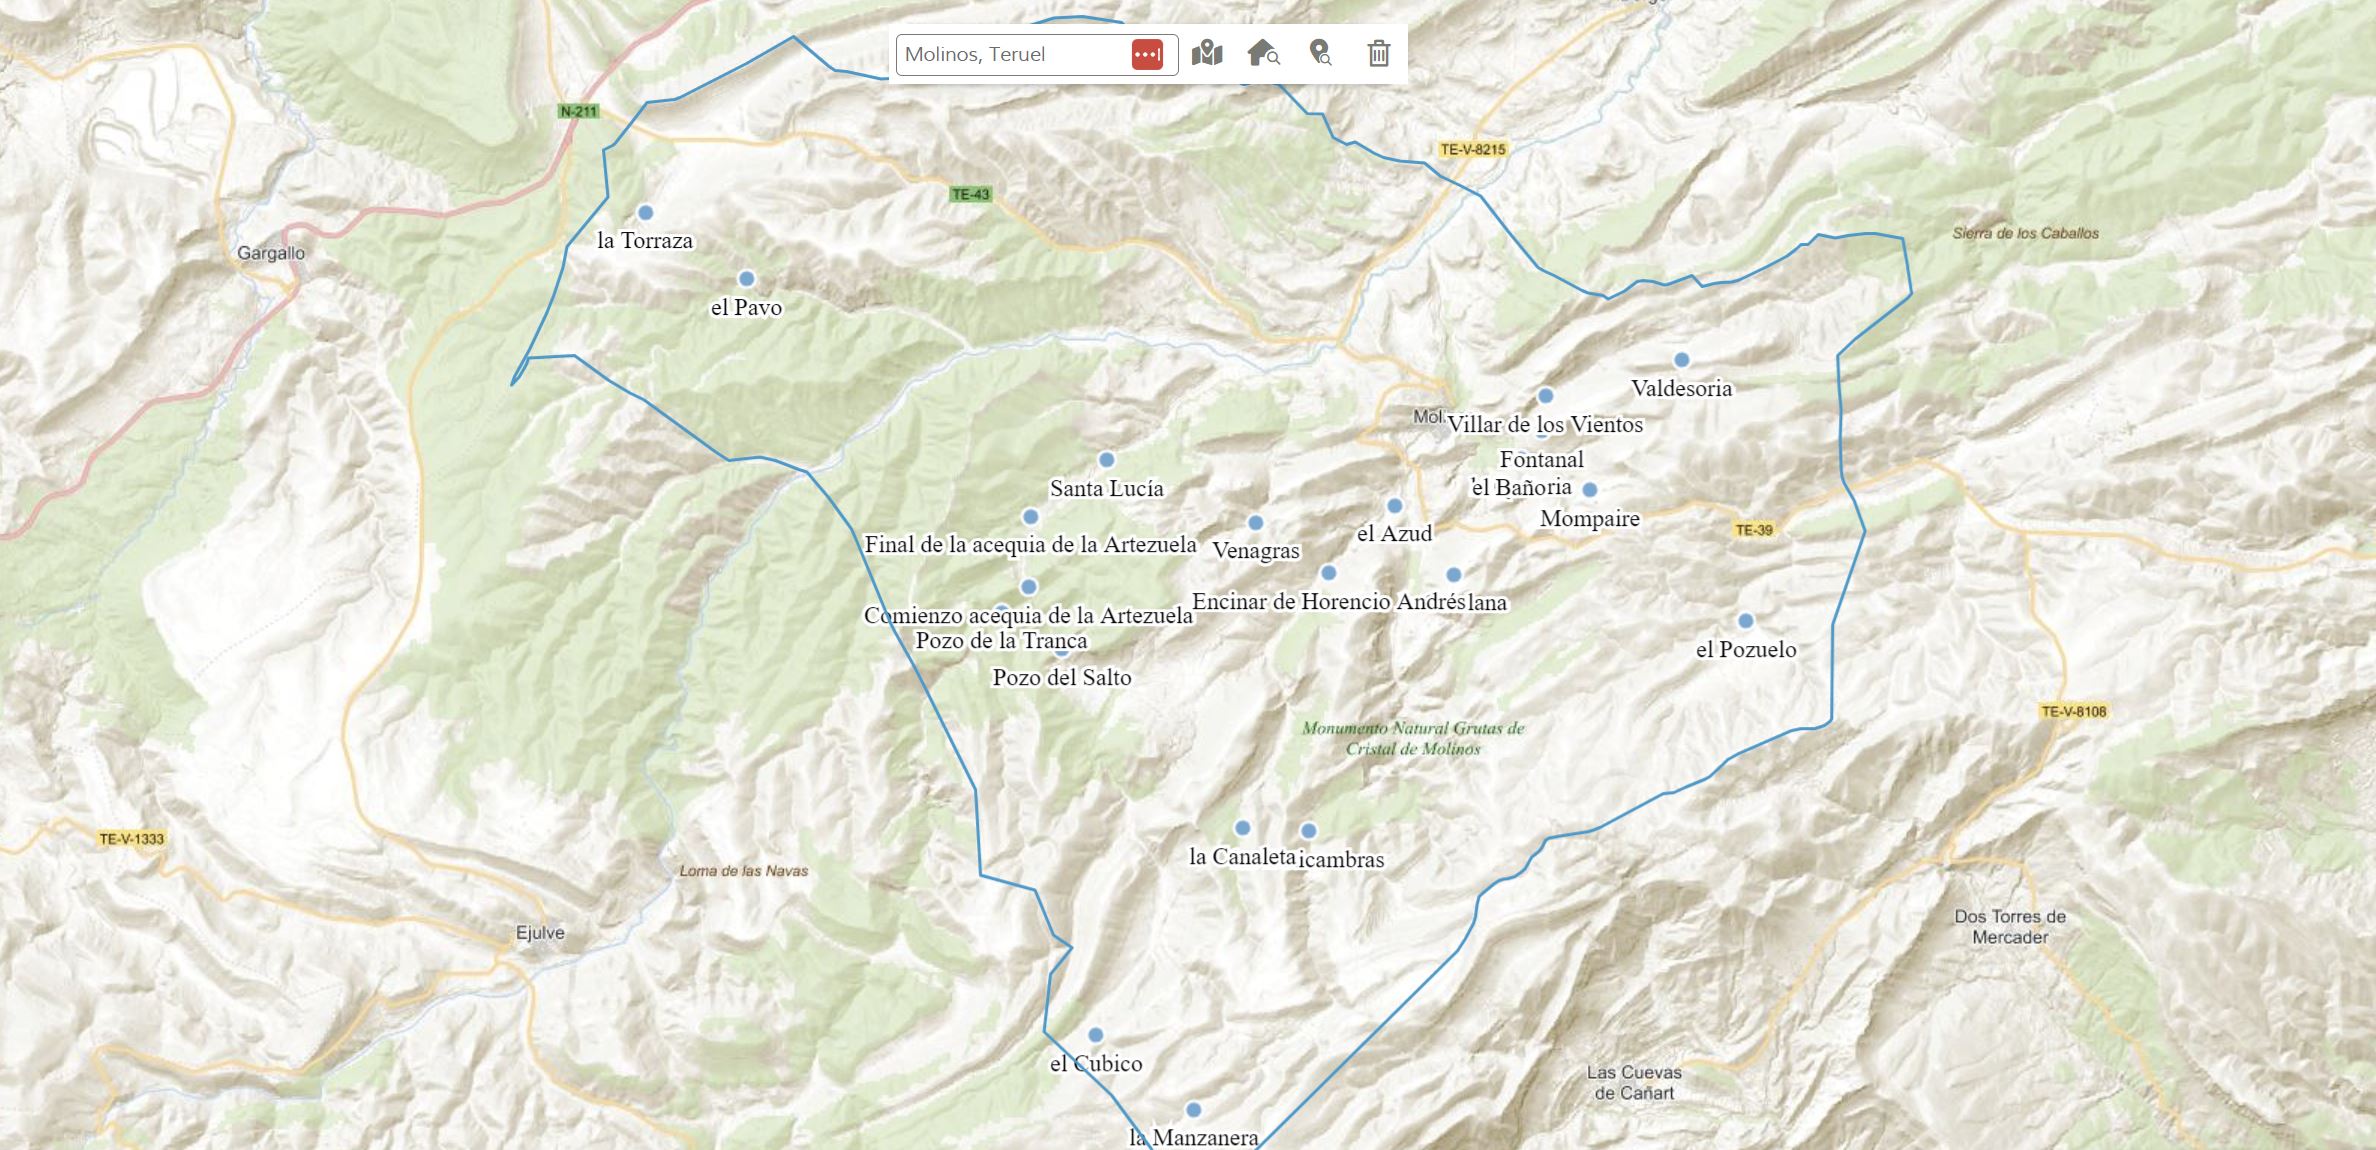 Mapa general Molinos de Teruel - Inventario de fuentes